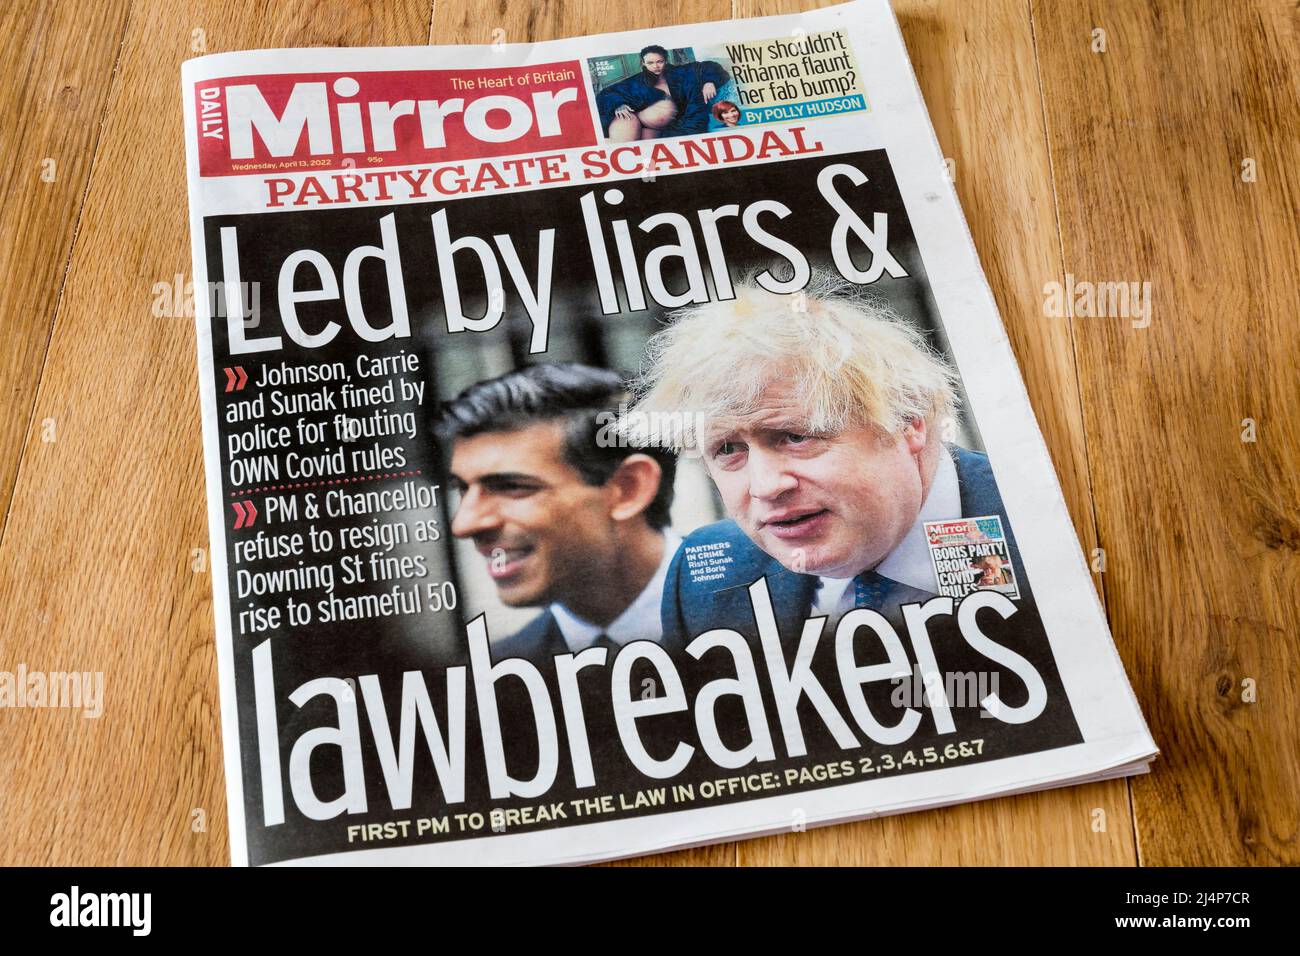 Daily Mirror titolo del 13 aprile legge LED da bugiardi e lawbreakers. Risposta a Johnson che è stato multato per le parti durante il blocco COVID. Foto Stock